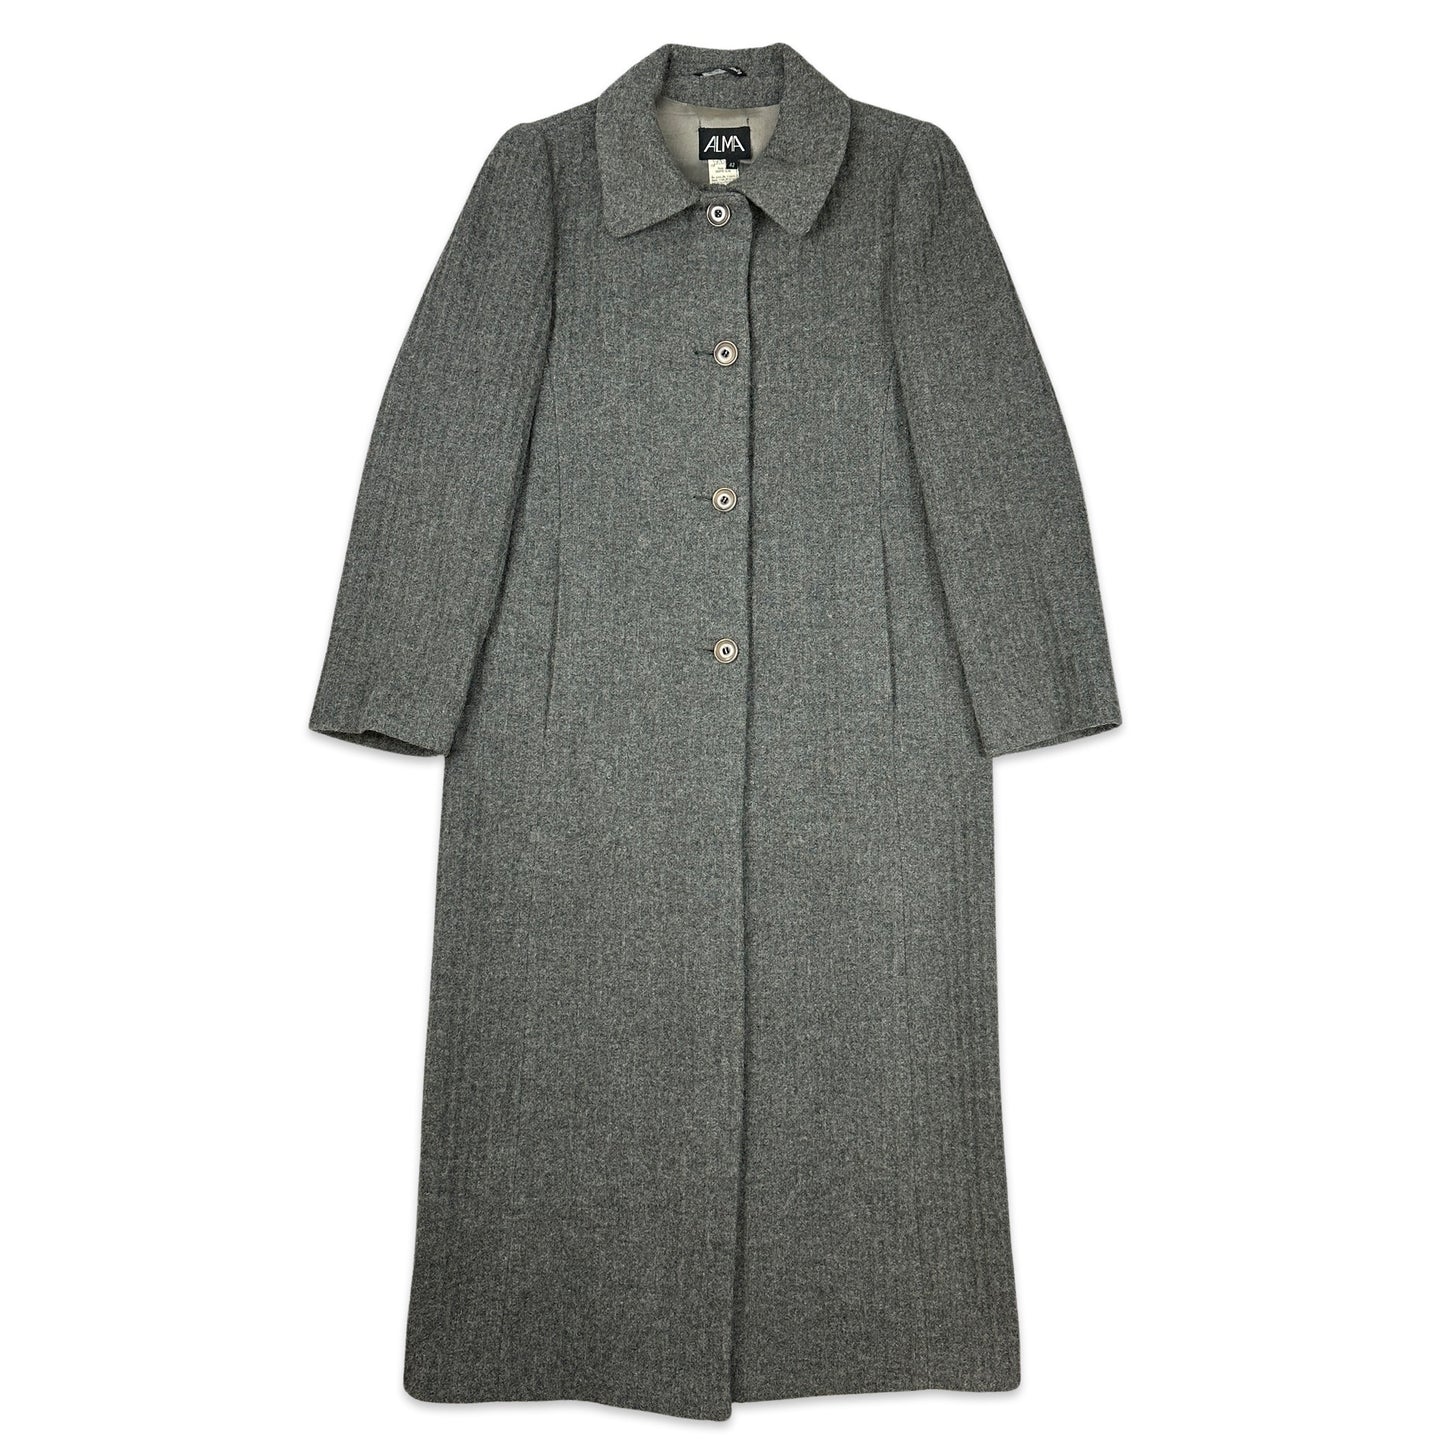 90s Vintage Grey Wool Duster Coat 10 12